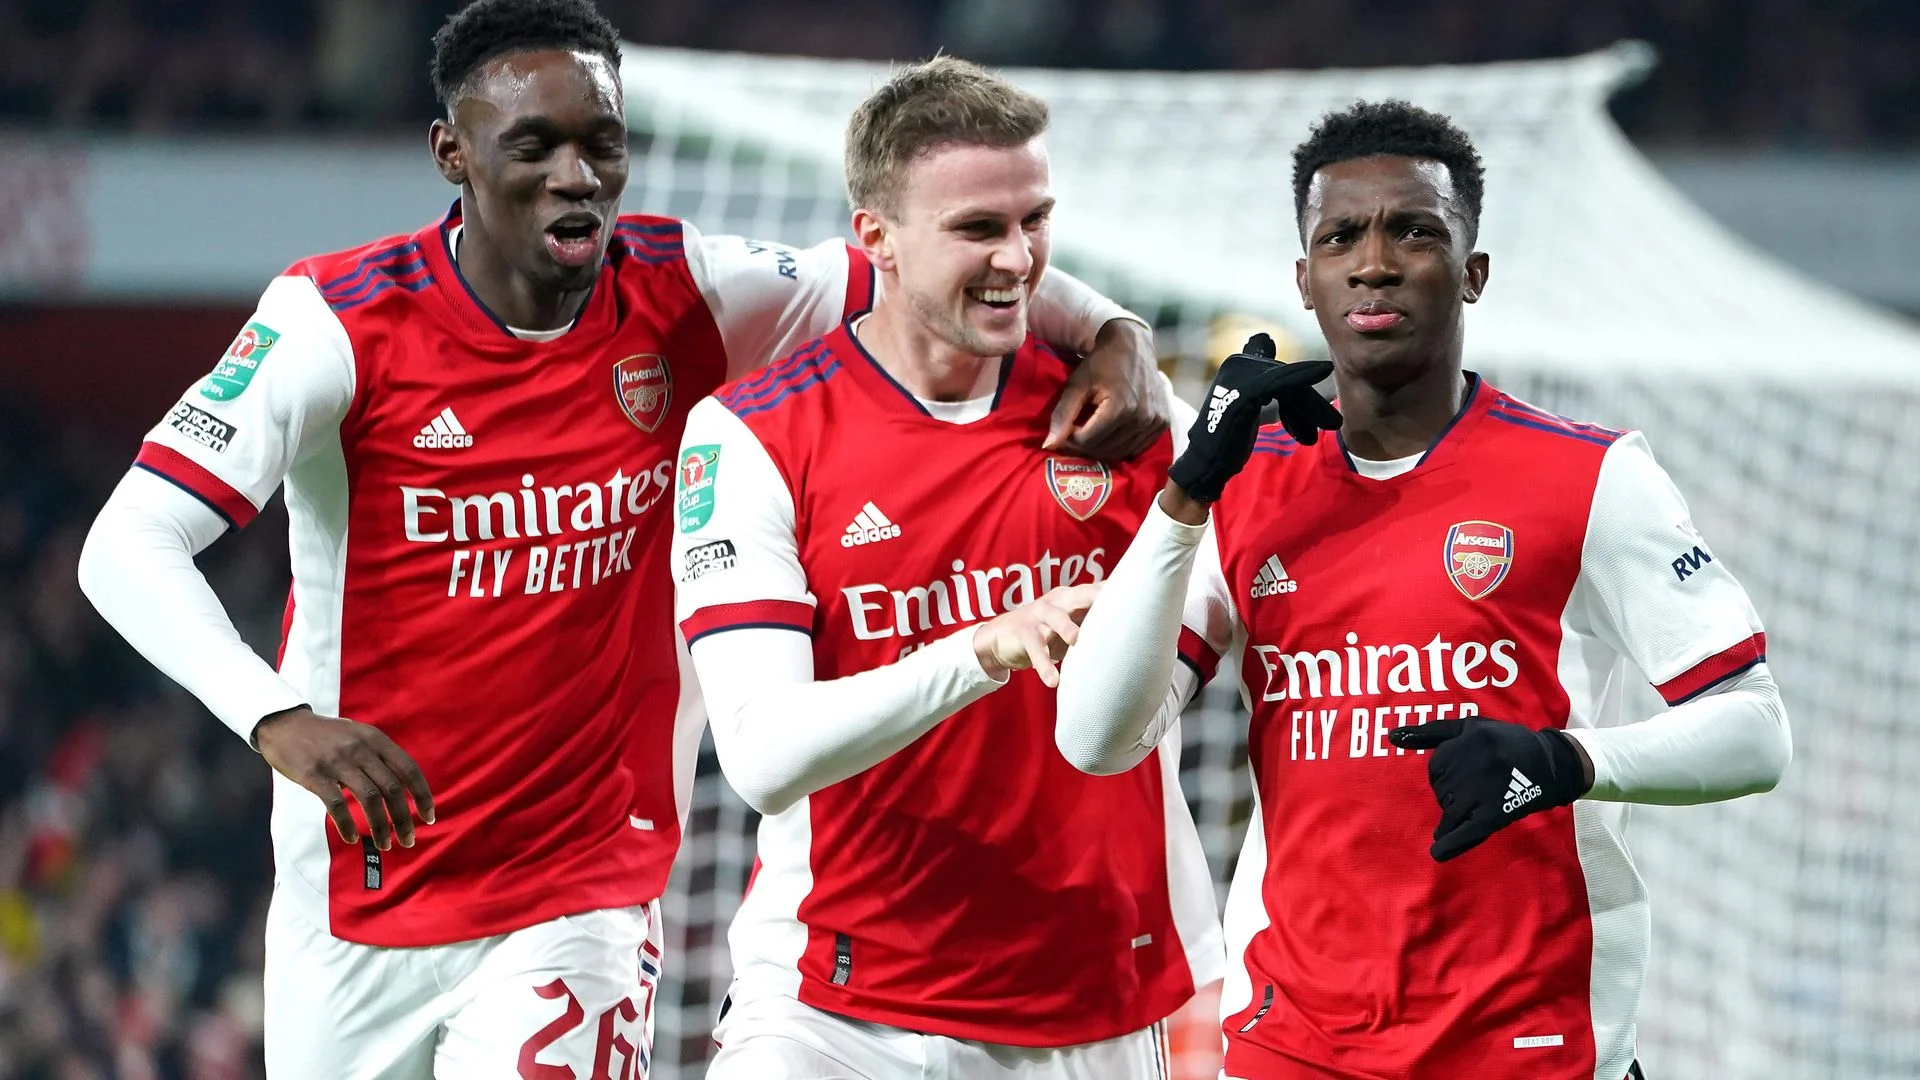 Officiel: Arsenal dévoile son troisième maillot 2022/23, pour une première avec cette couleur